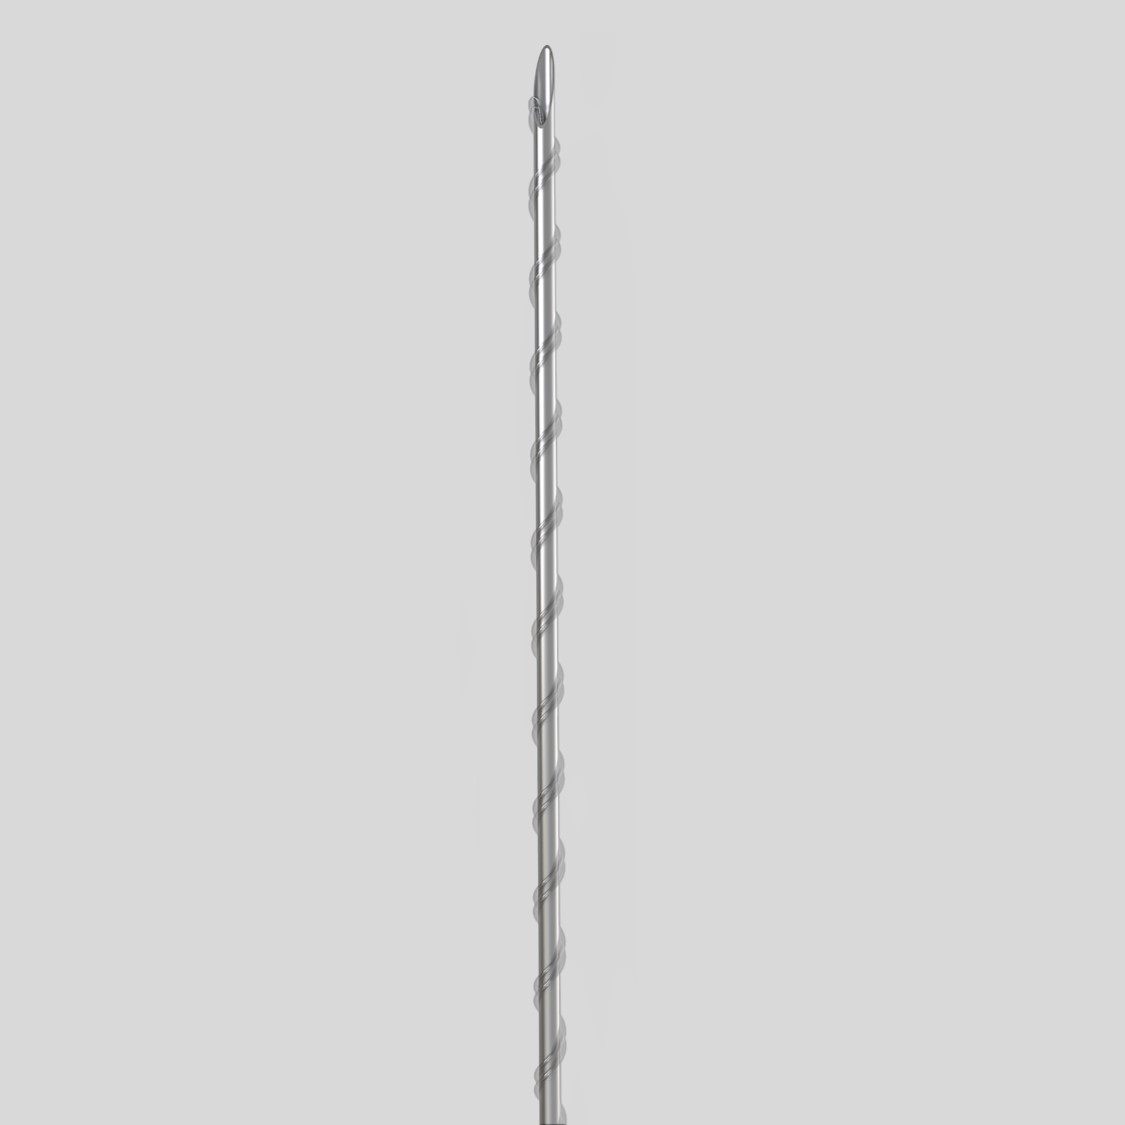 Нить из полимолочной кислоты обычная на полой игле Двойная спираль/ Double Screw (Sharp Needle) PLLA